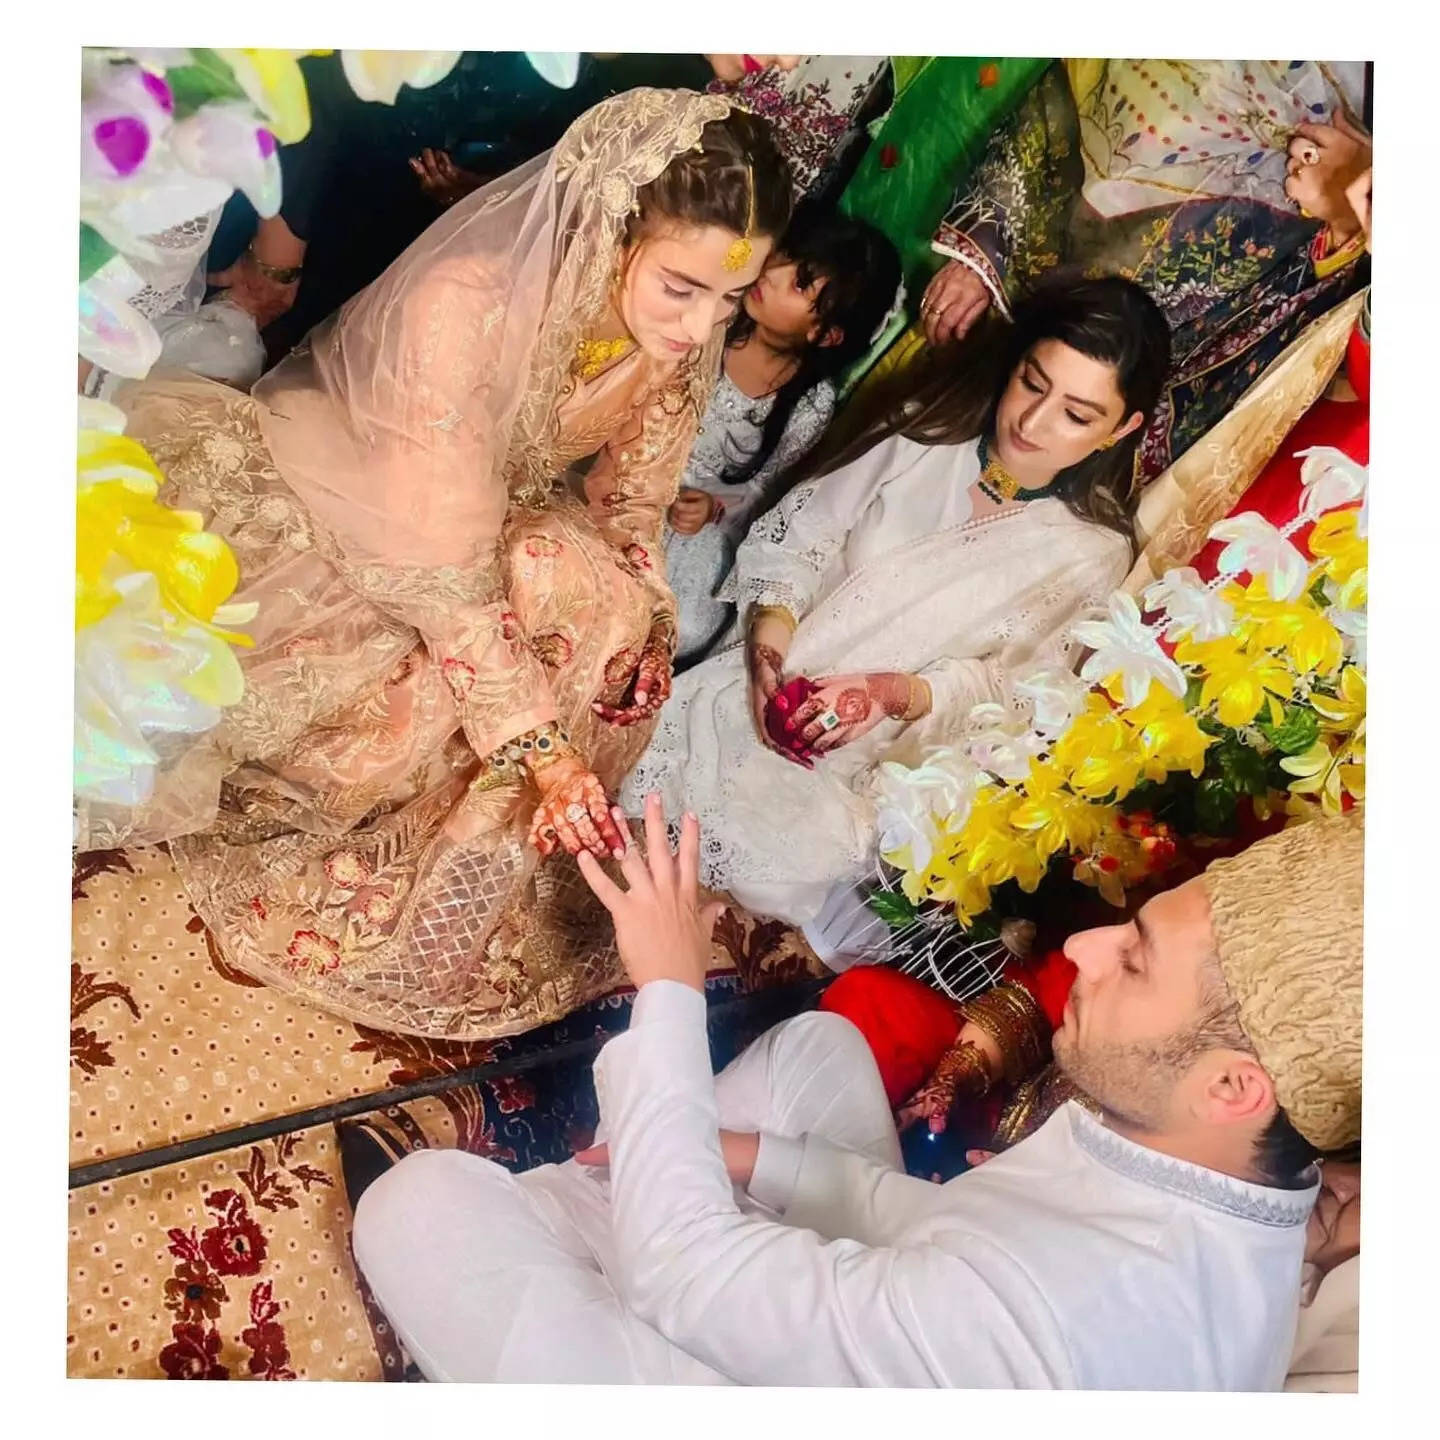 मशहूर एक्टर ने कश्मीर में रचा ली शादी, बाराती बने शहीर शेख ने की मस्ती; सोने के गहनों से लदी दुल्हनिया से नहीं हटी नजरें